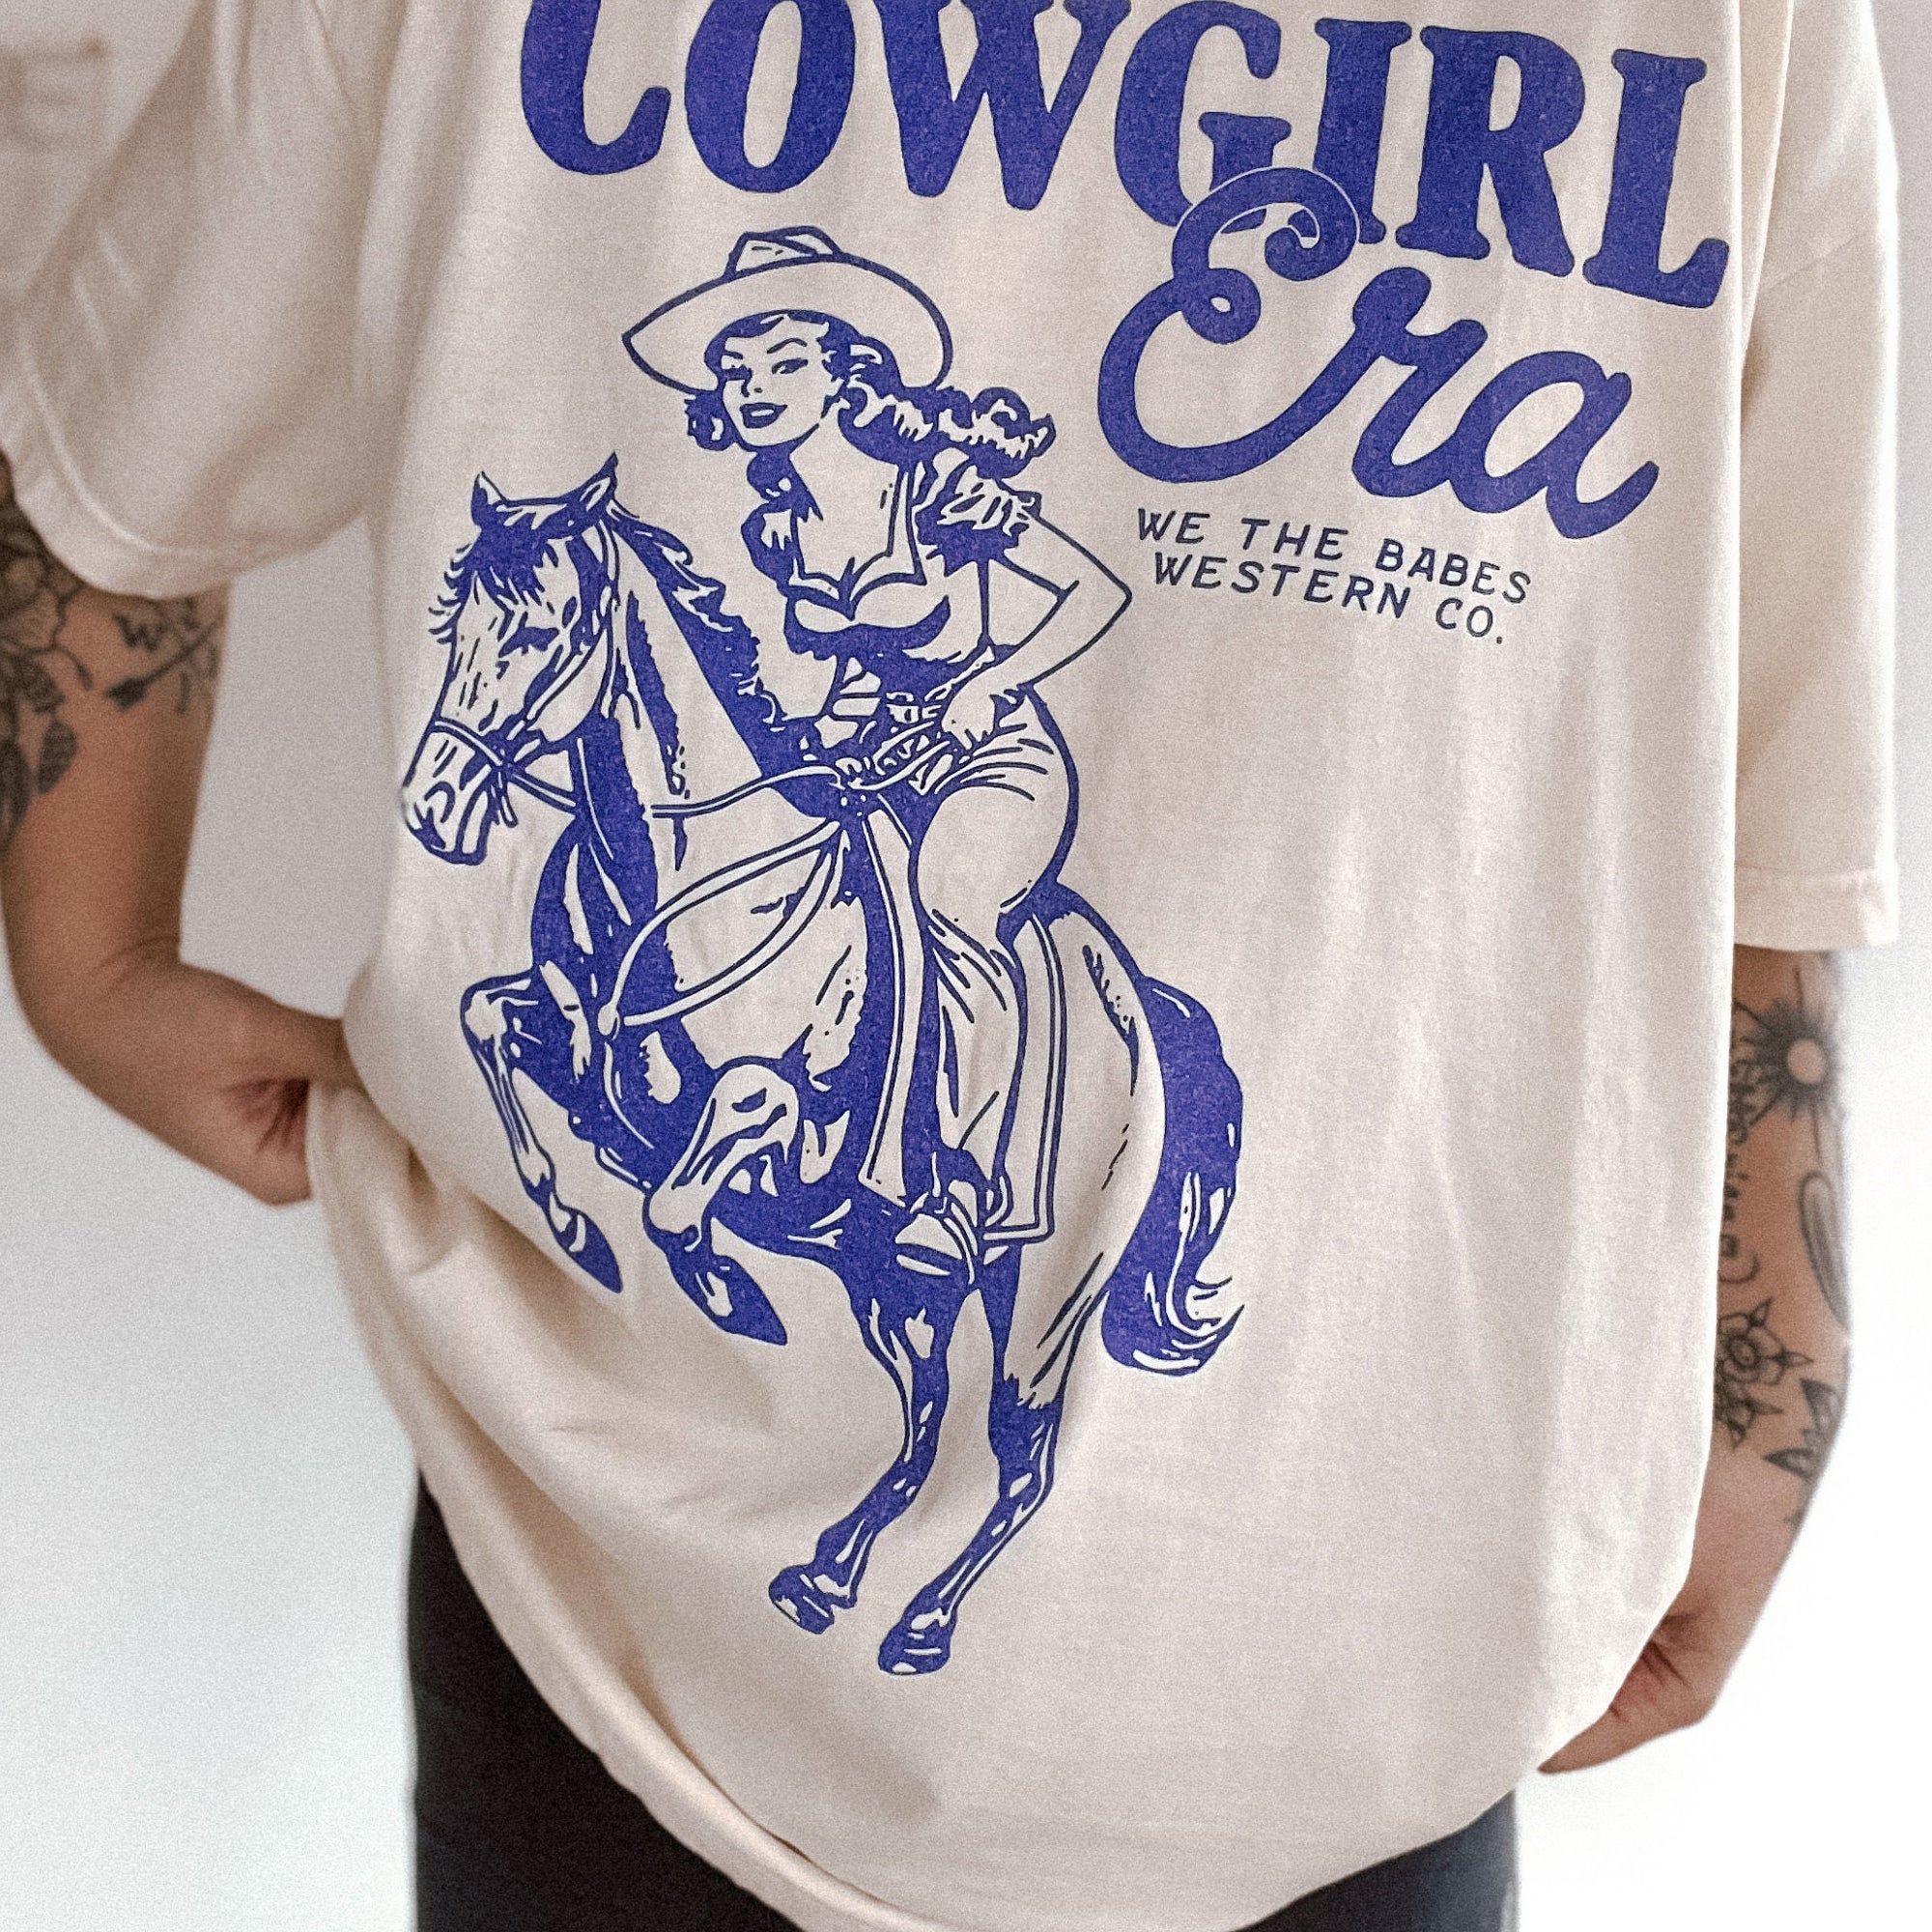 Cowgirl Era Tee For Women